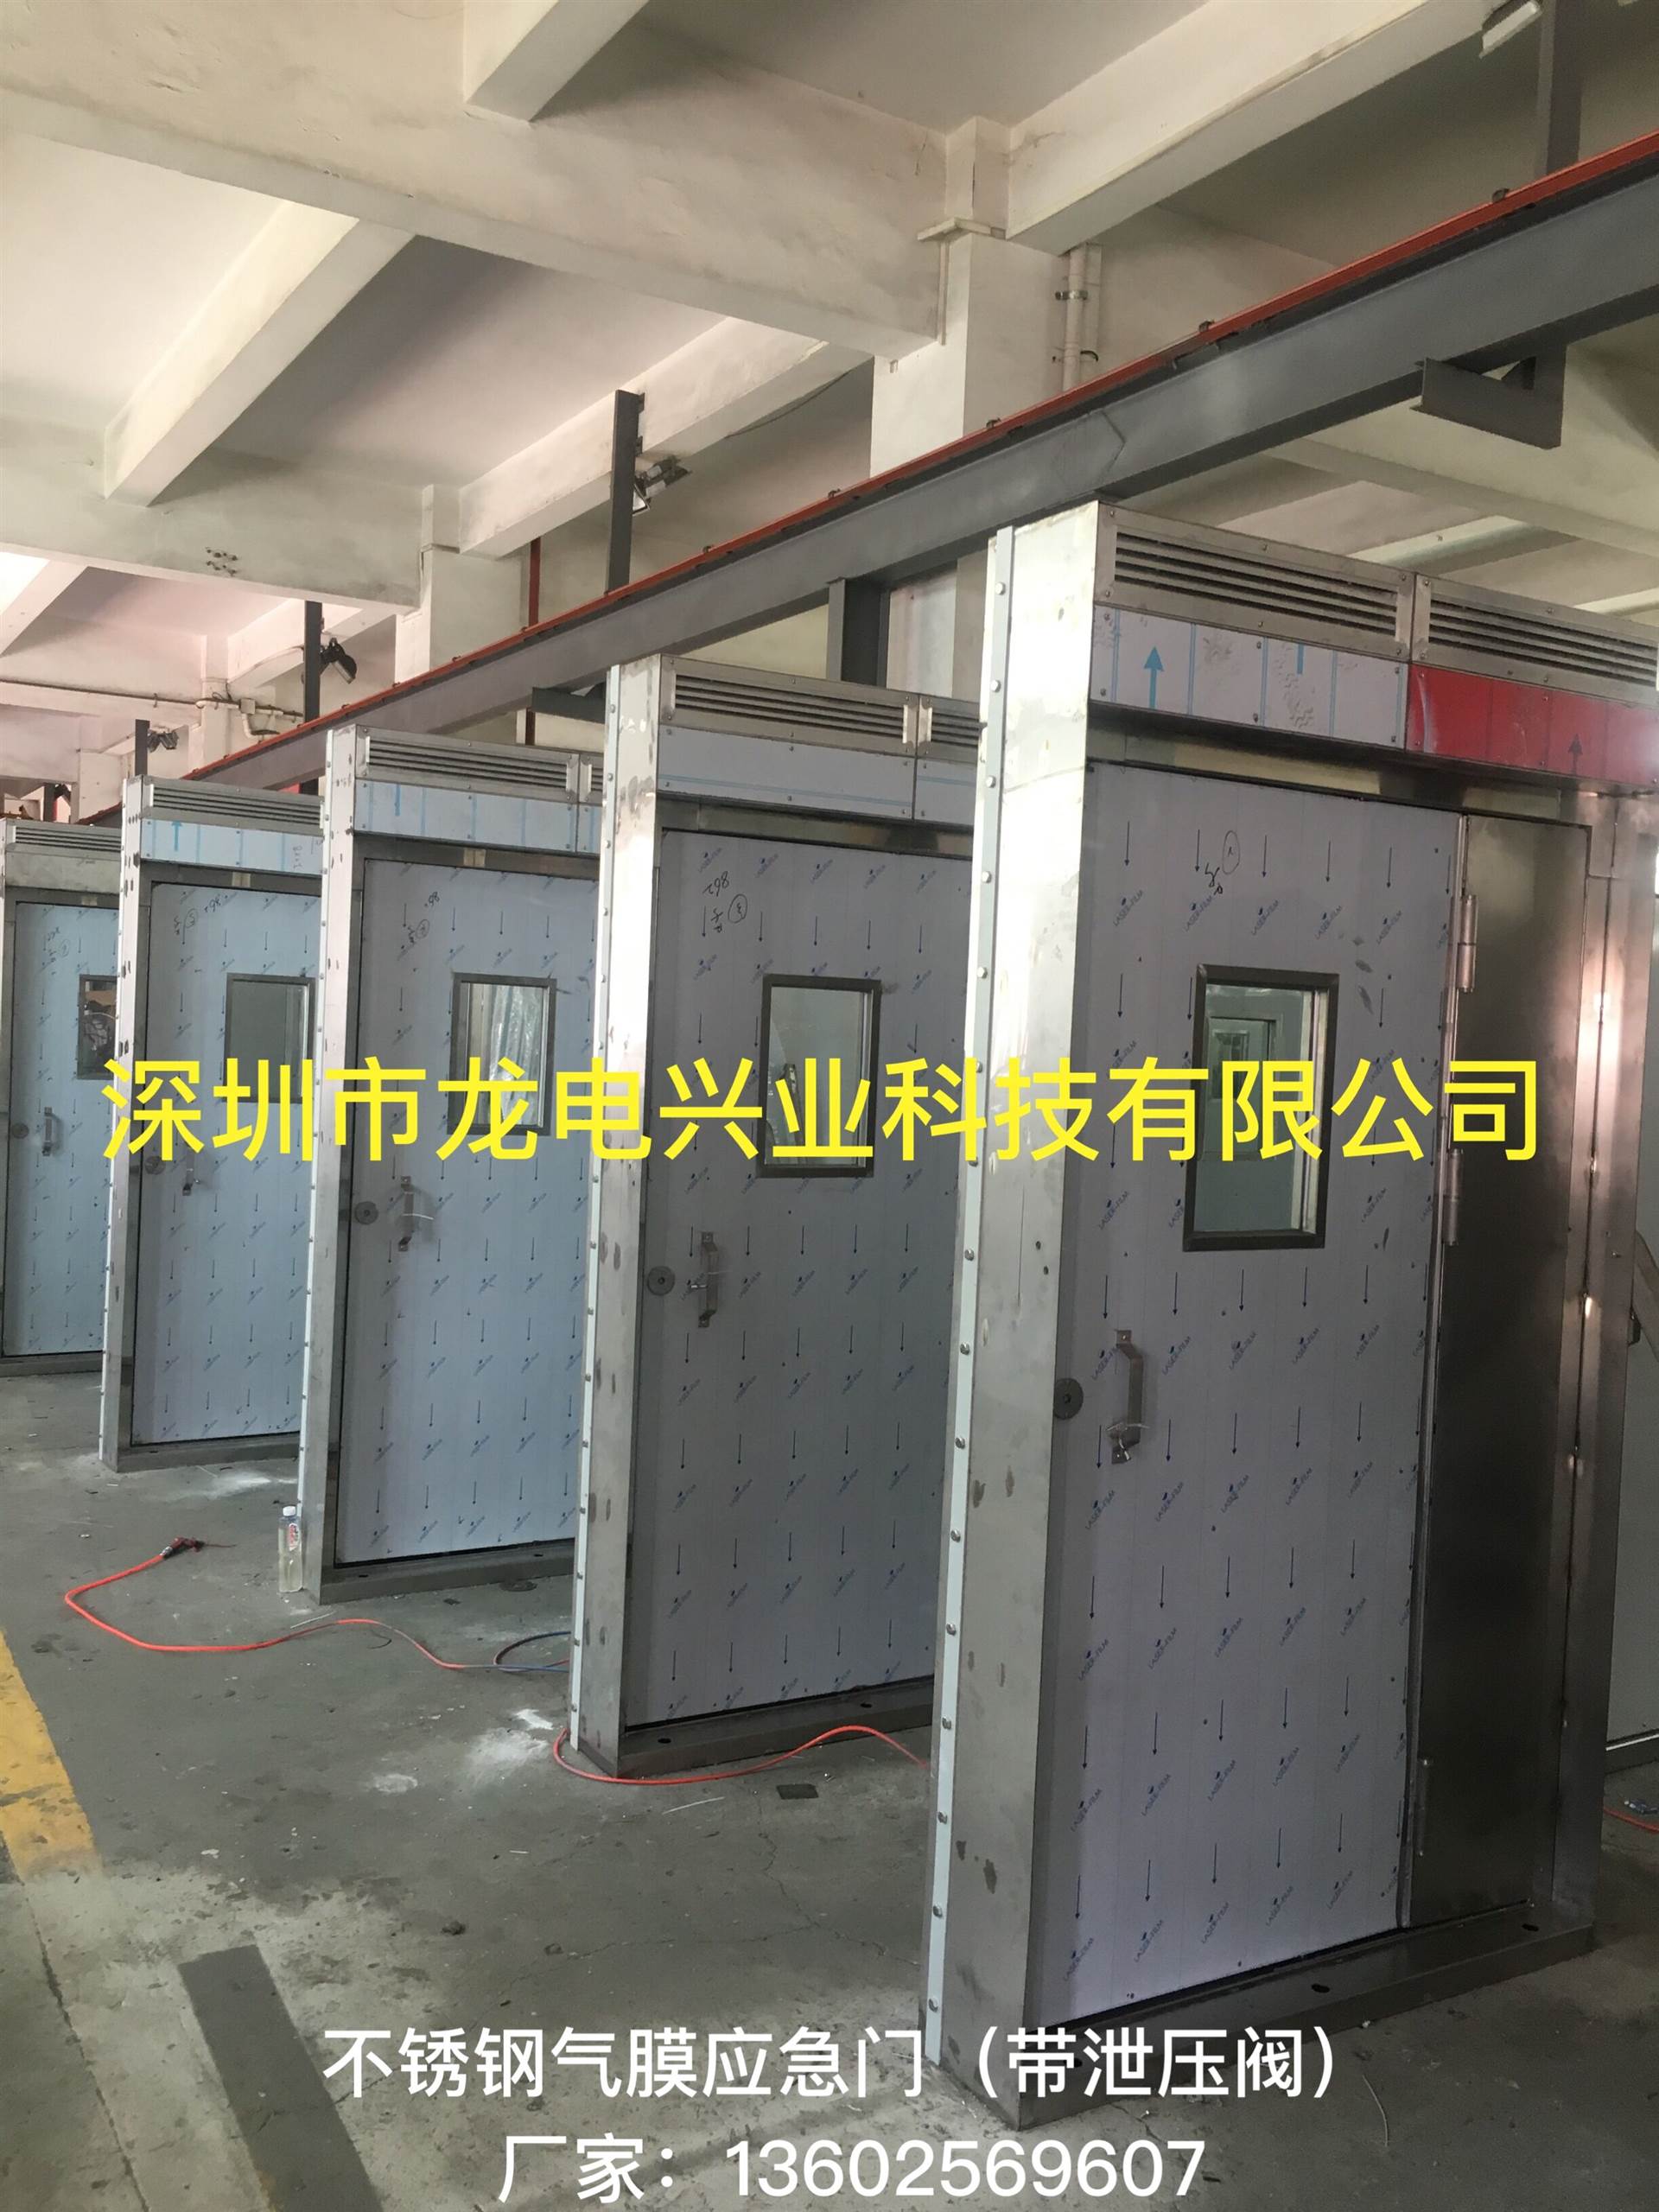 湖北襄樊市气膜应急气密门厂家